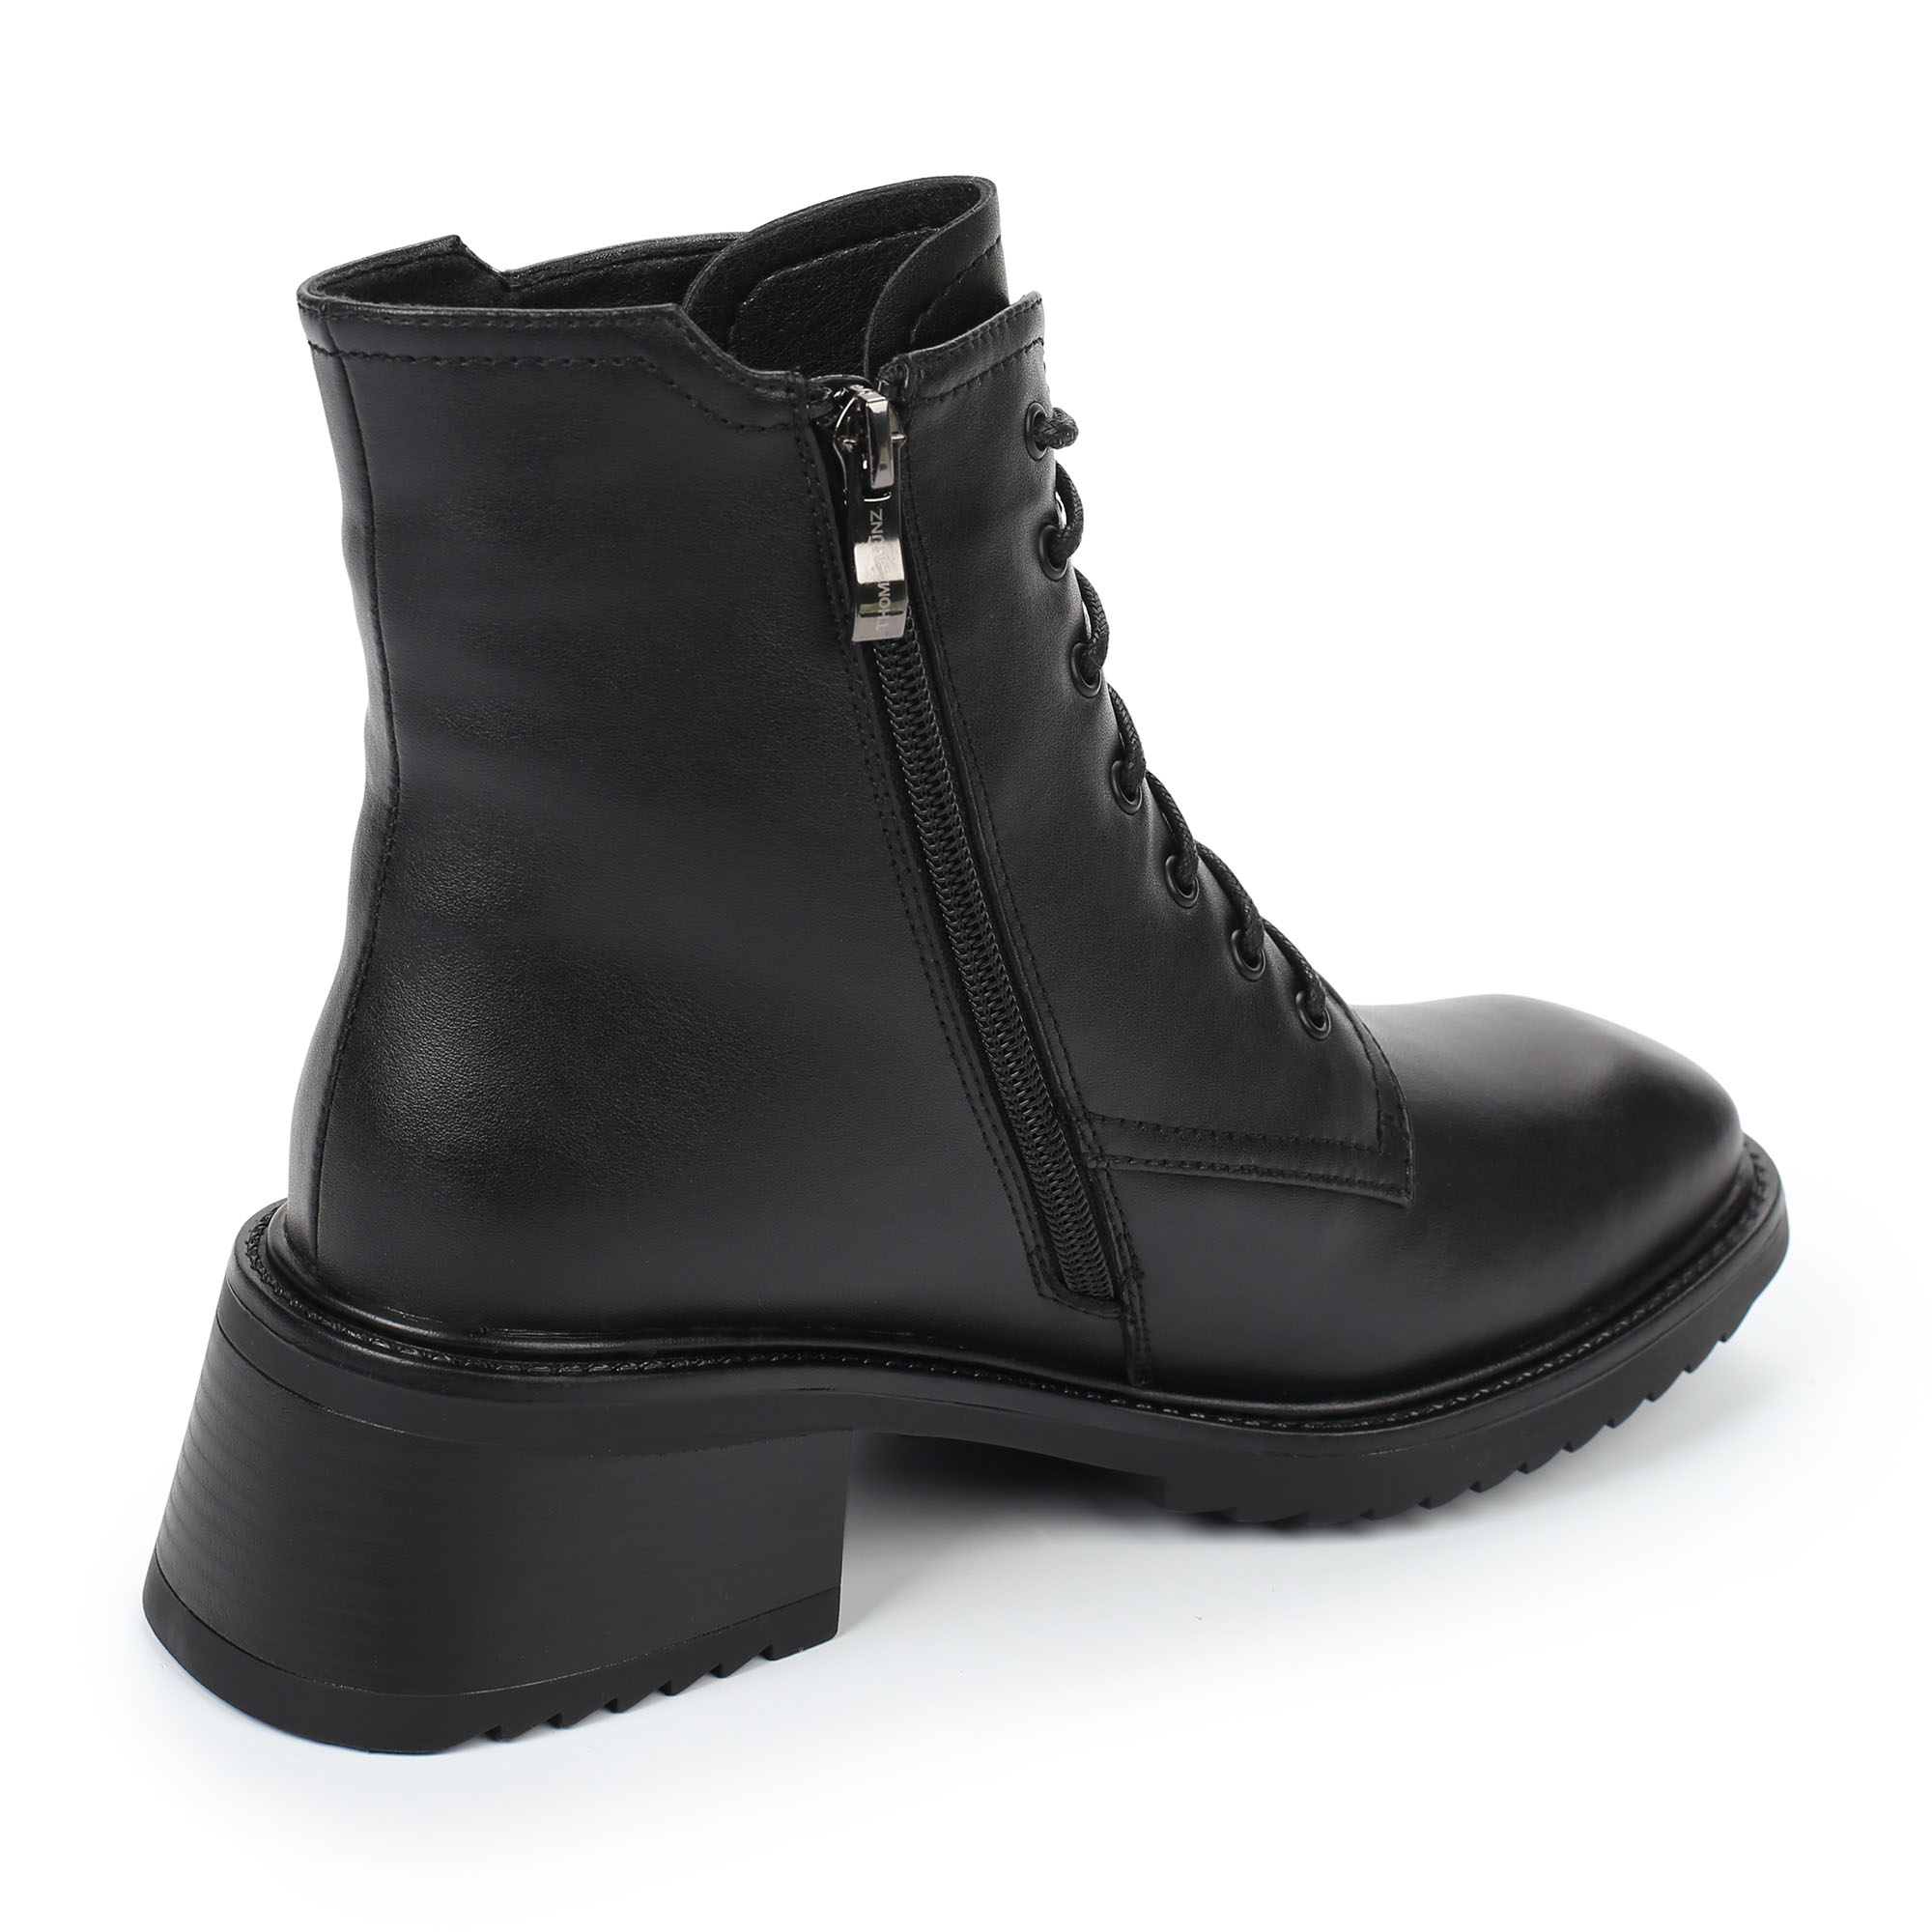 Ботинки Thomas Munz 102-202A-5602, цвет черный, размер 38 - фото 3